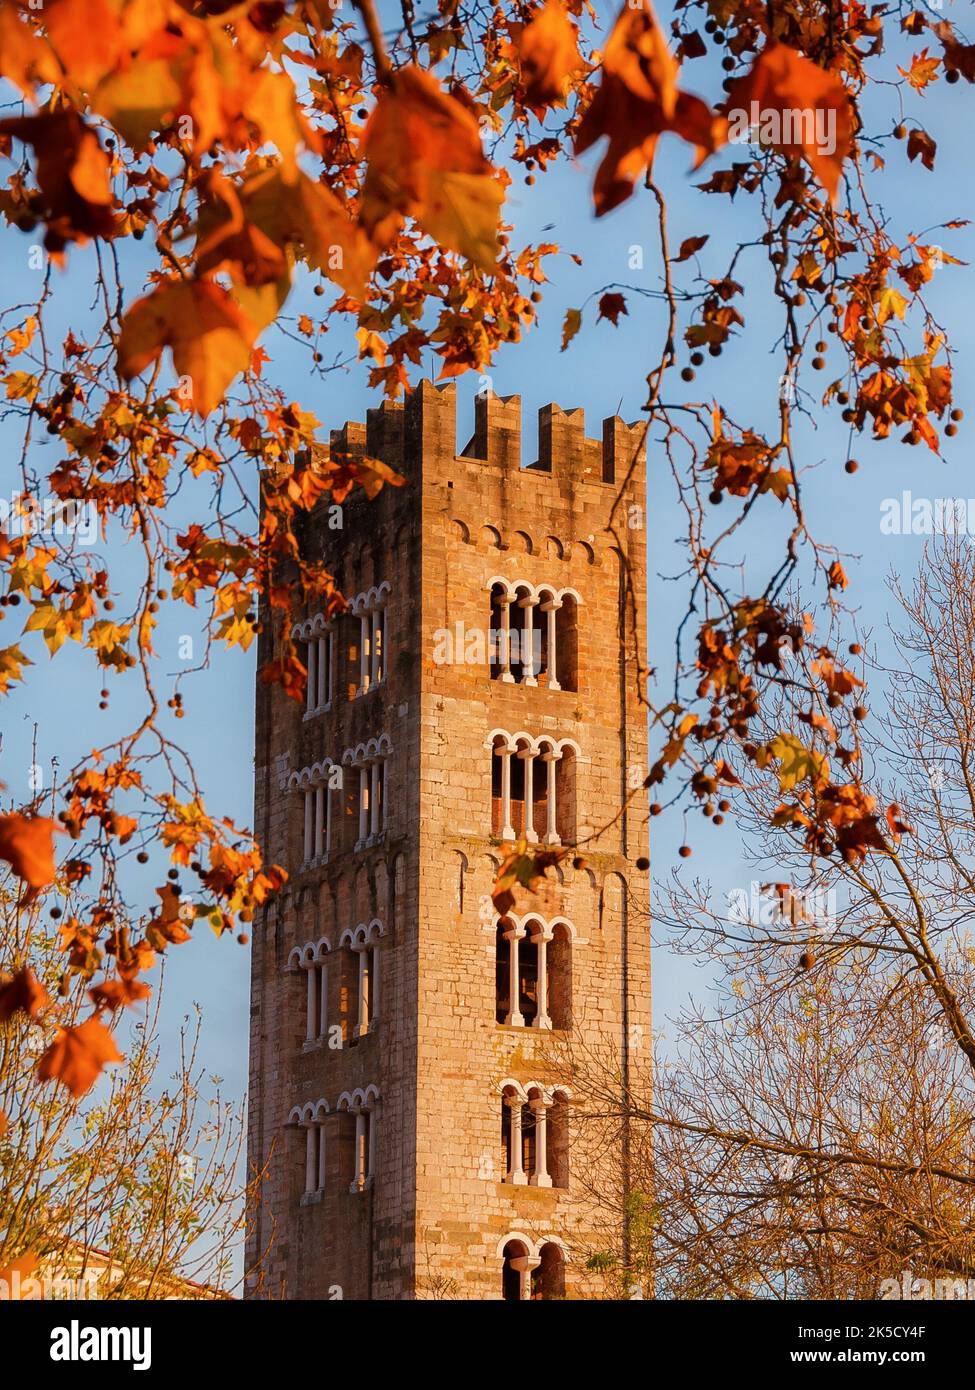 Herbst und Laub in Lucca. Kirche St. Fredianus mittelalterlichen Glockenturm zwischen Platanen herbstlichen roten, orangen und braunen Blättern Stockfoto